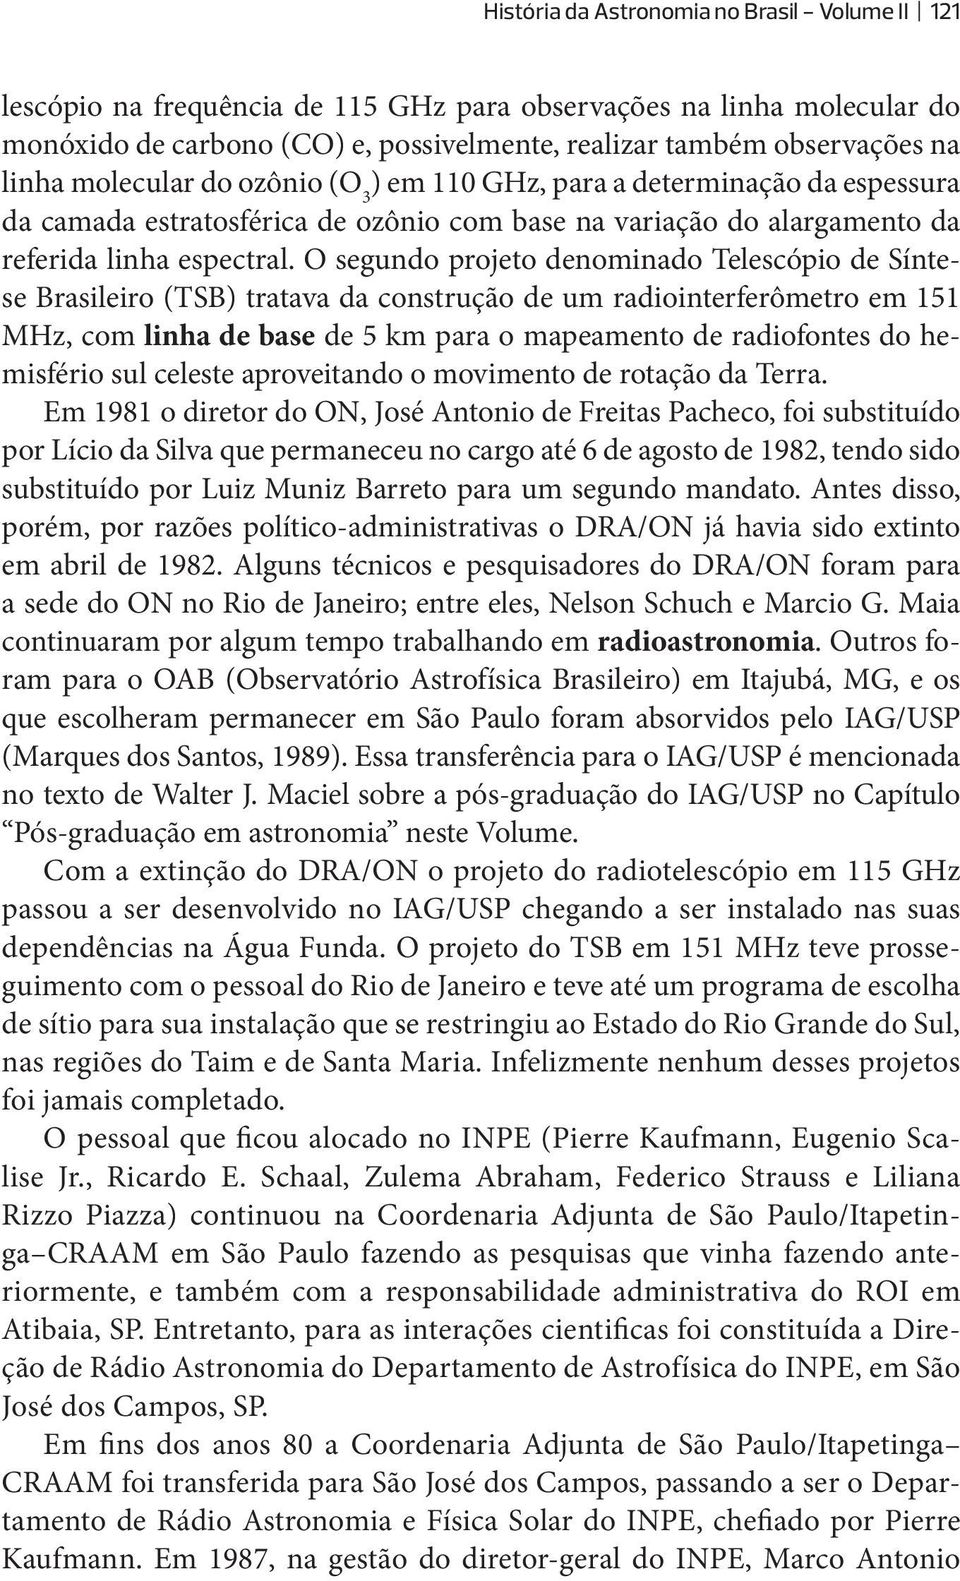 O segundo projeto denominado Telescópio de Síntese Brasileiro (TSB) tratava da construção de um radiointerferômetro em 151 MHz, com linha de base de 5 km para o mapeamento de radiofontes do